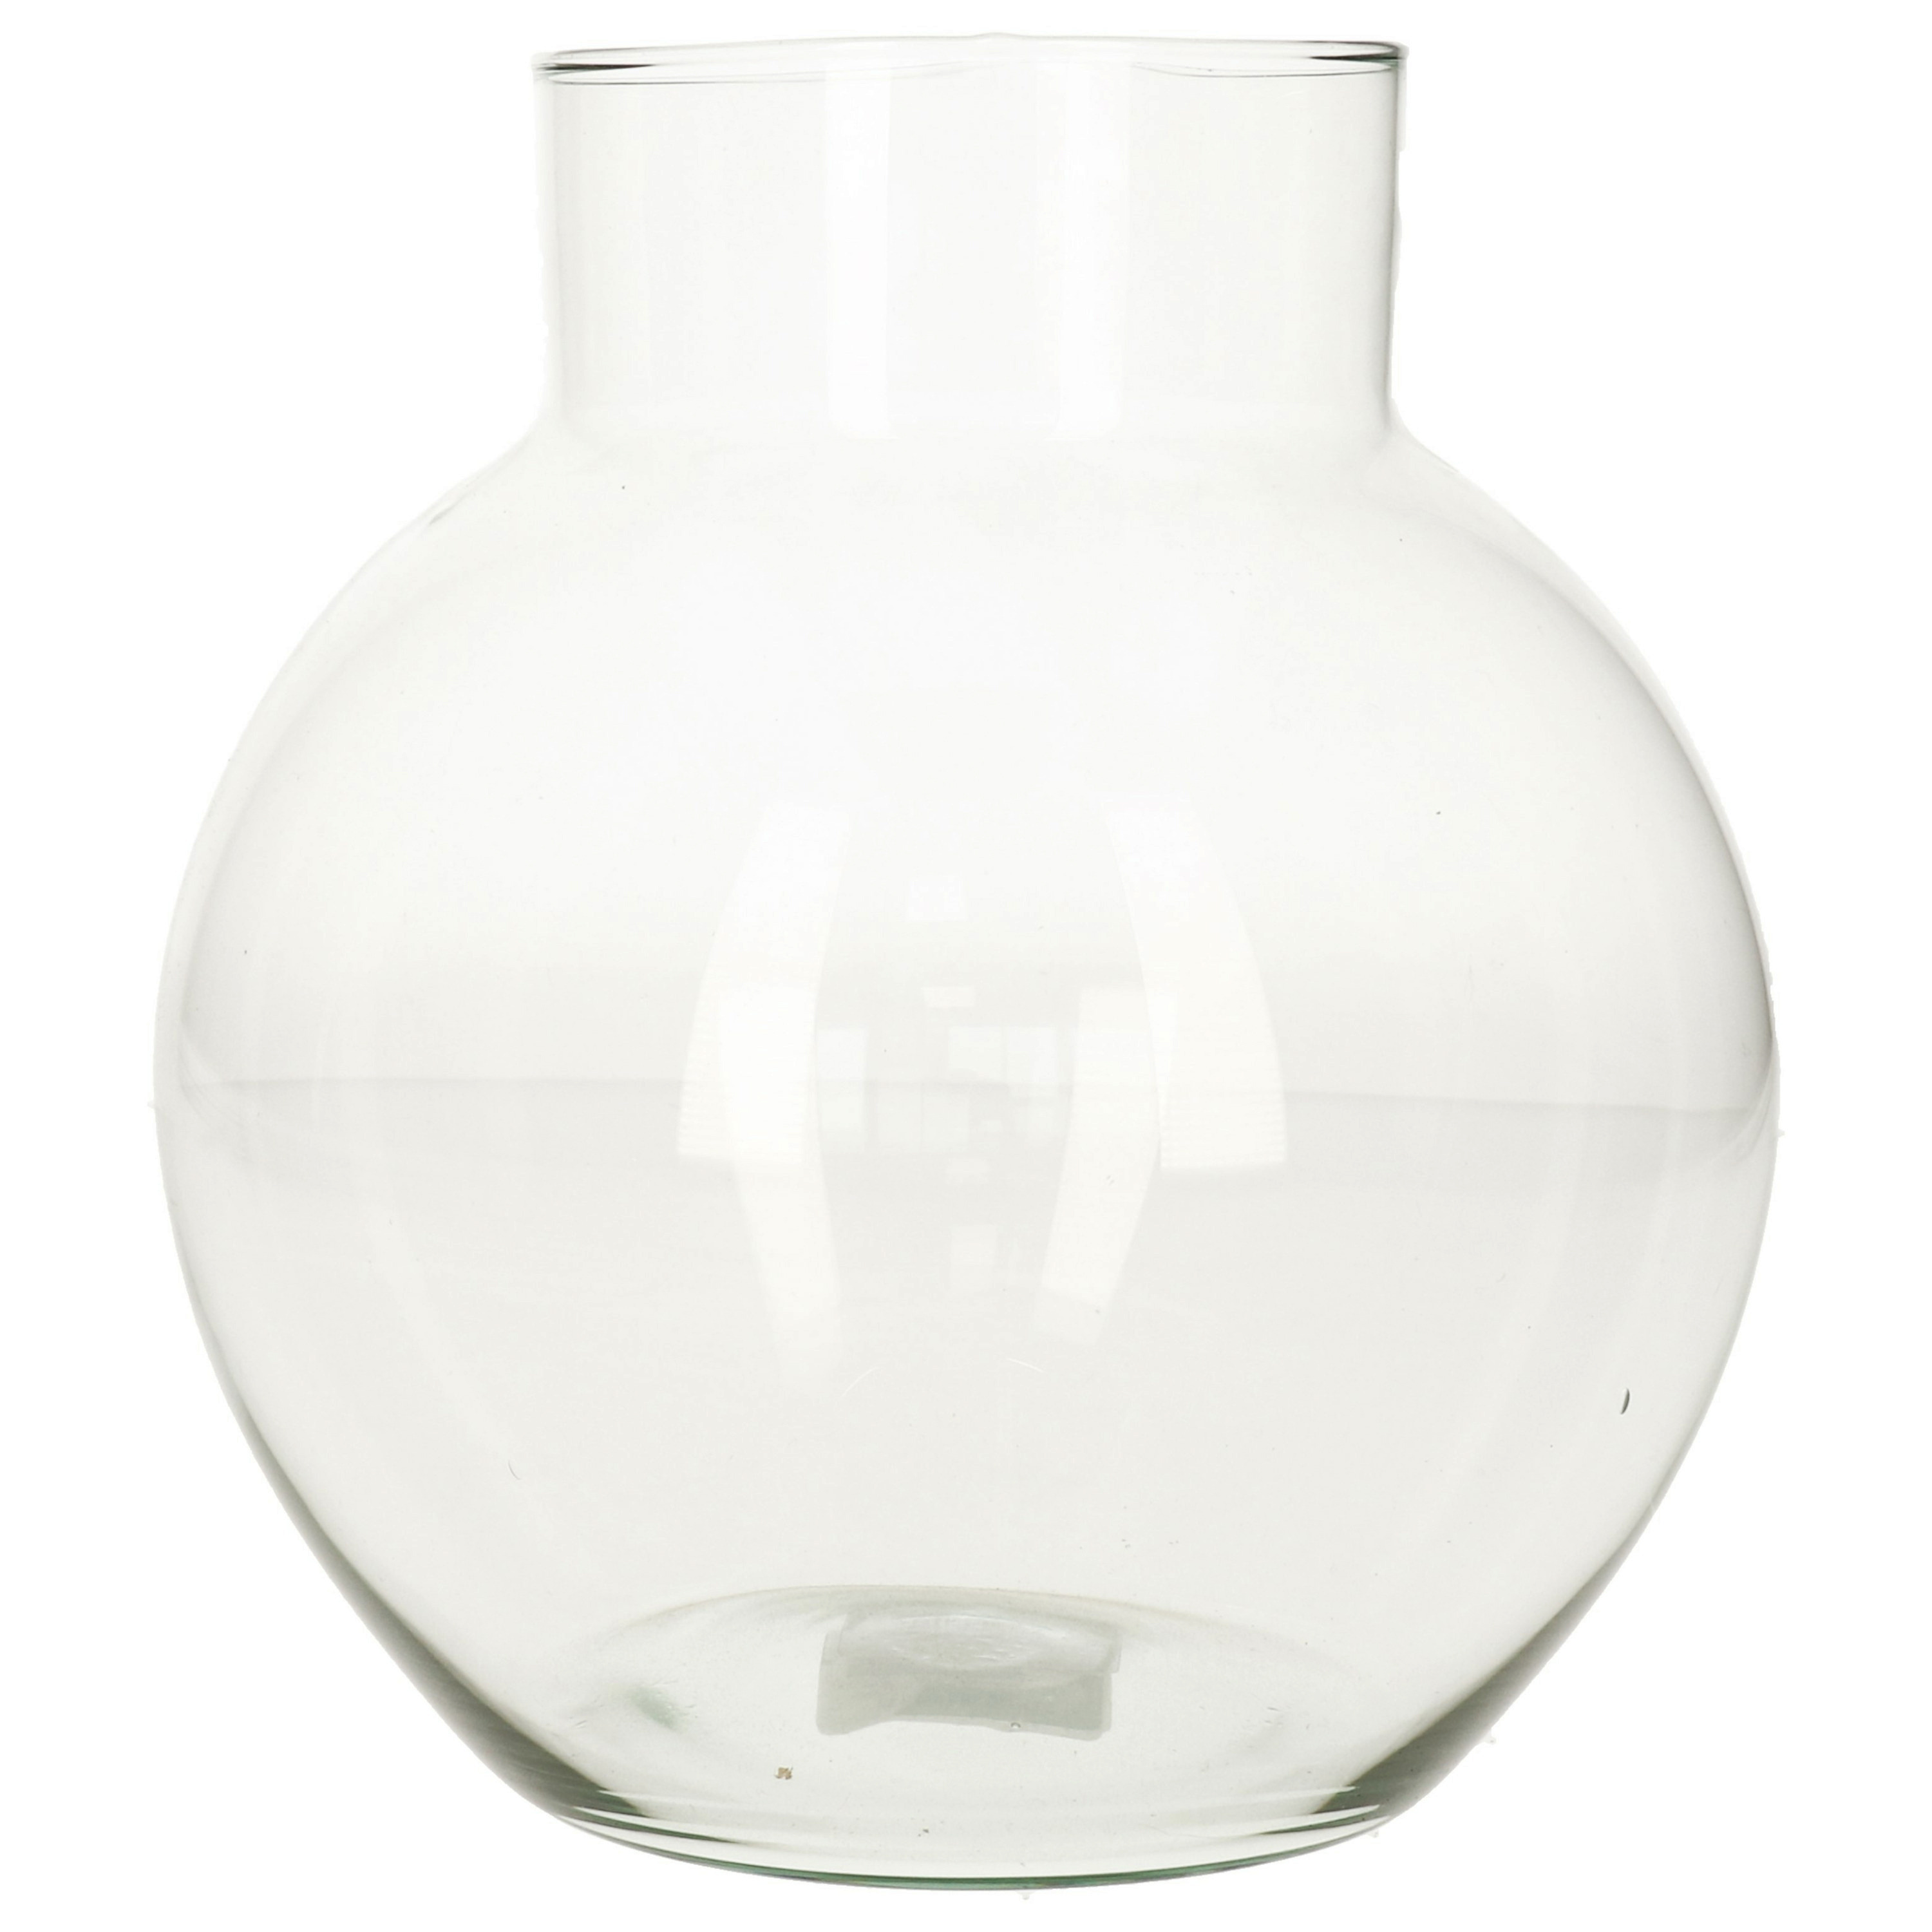 Hakbijl Glass Hakbijl bol vaas/terrarium - D19 x H20 cm - transparant glas -